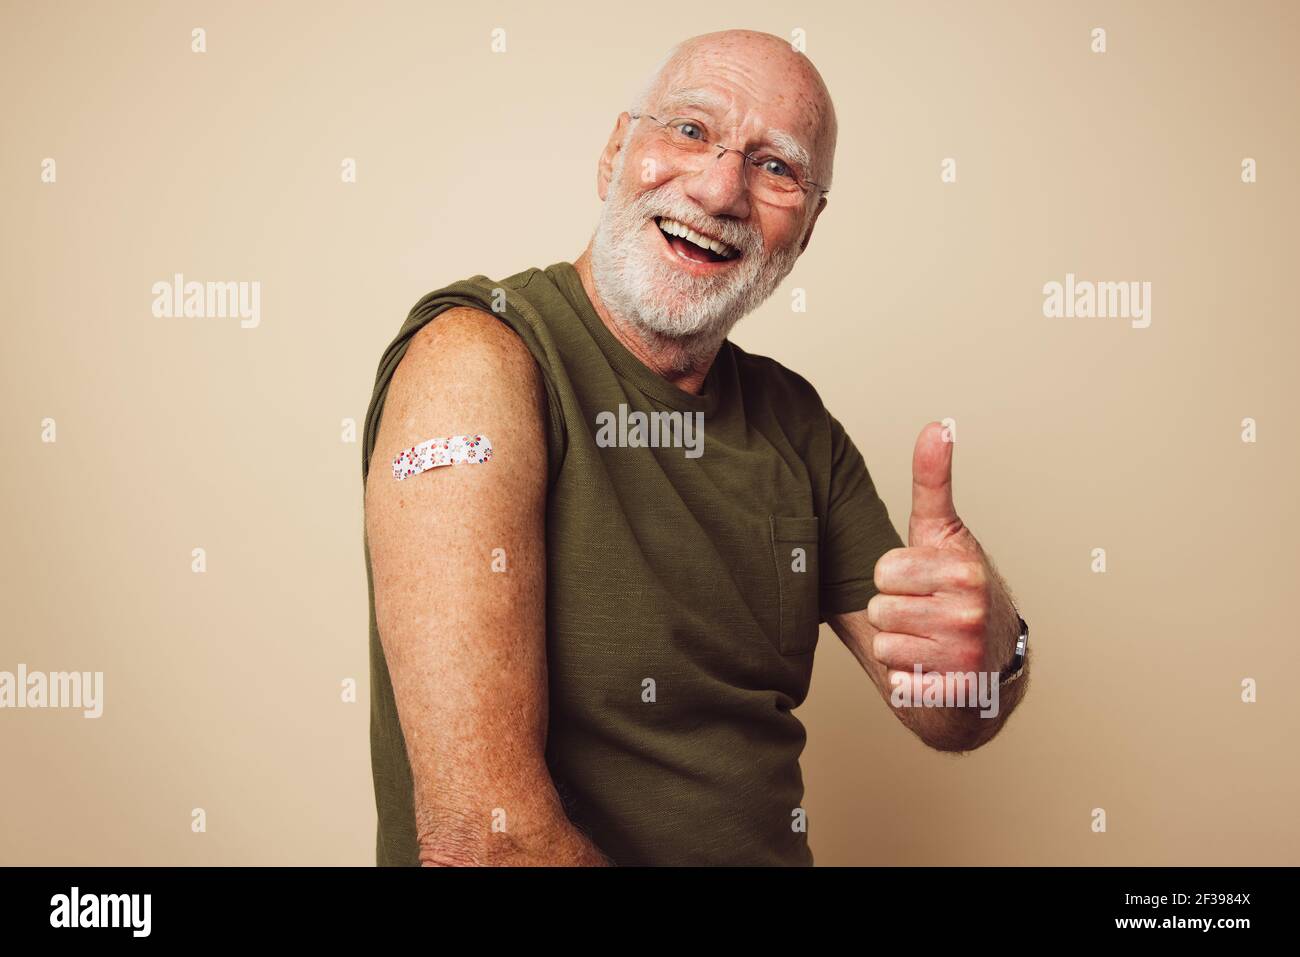 Ritratto di un maschio anziano sorridente e mostrante i pollici in su dopo avere ottenuto un vaccino. Uomo maturo con barba bianca seduta su fondo marrone sensazione Foto Stock